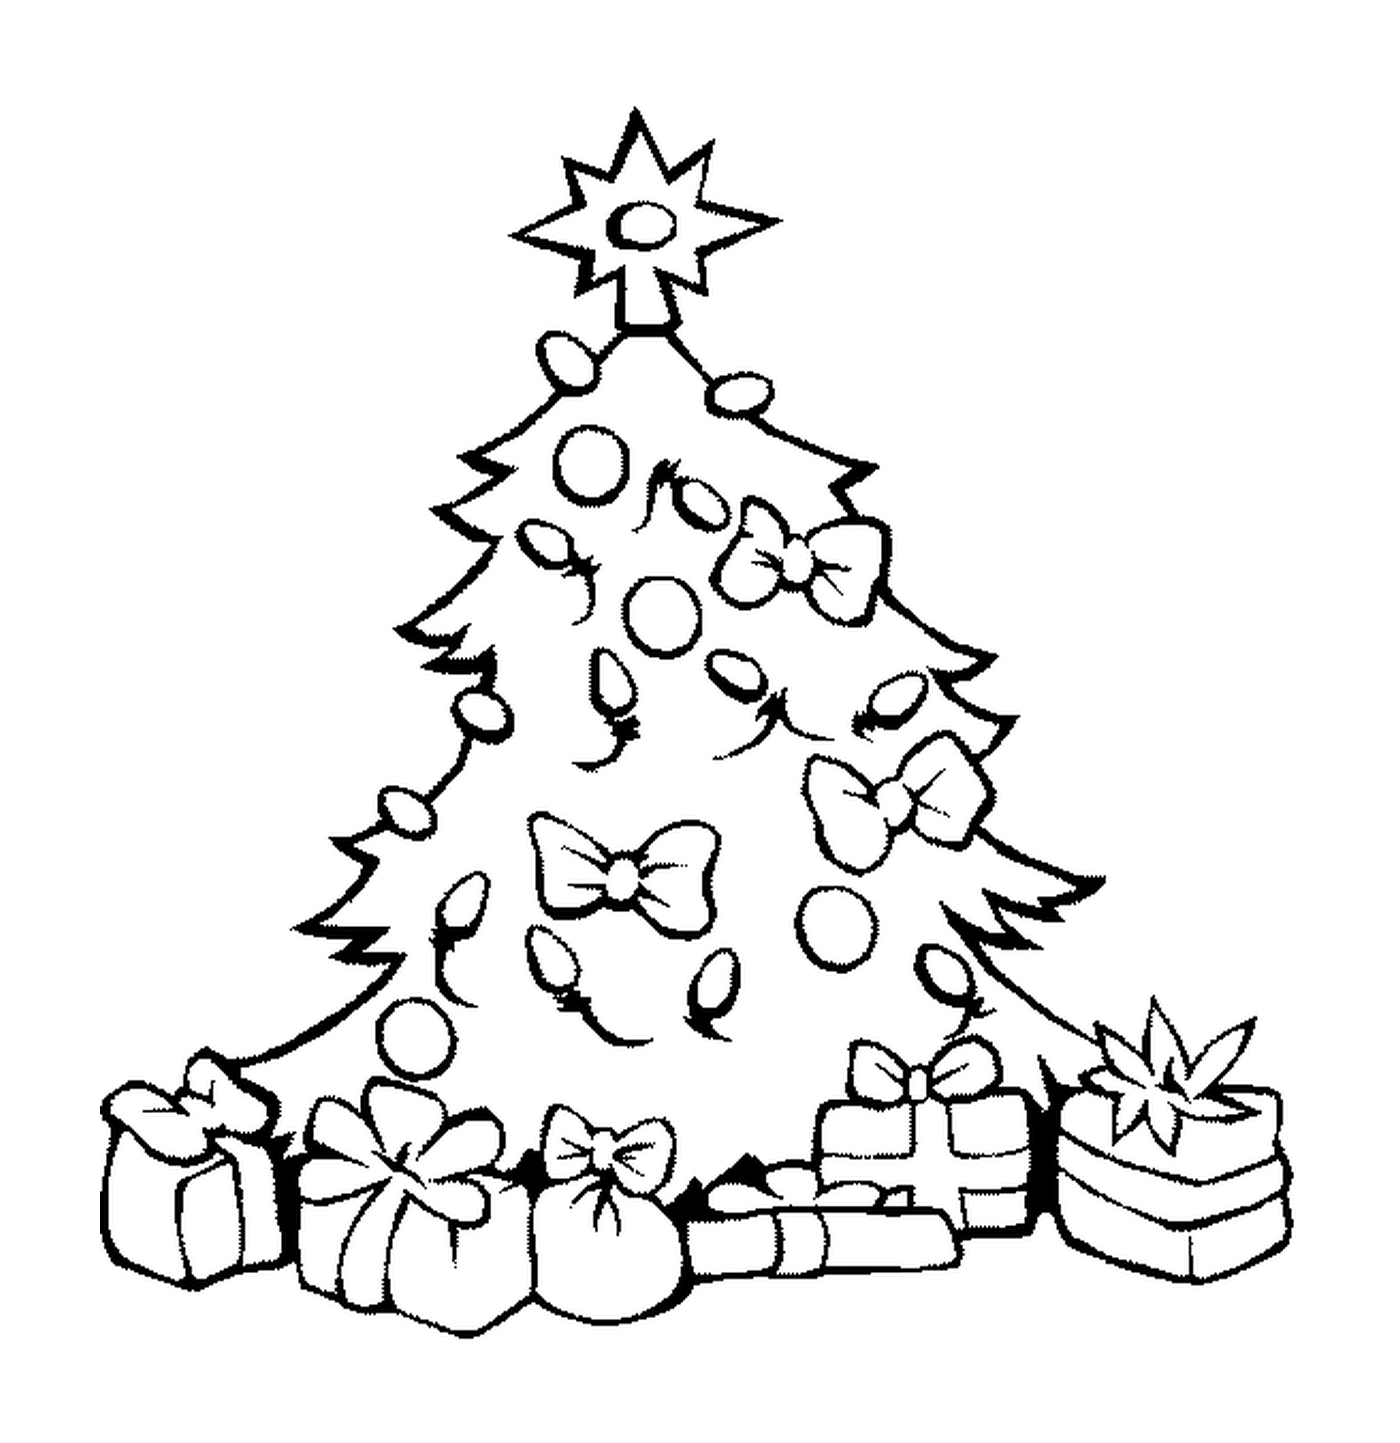  क्रिसमस के पेड़ में गेंदों और उपहारों के साथ 